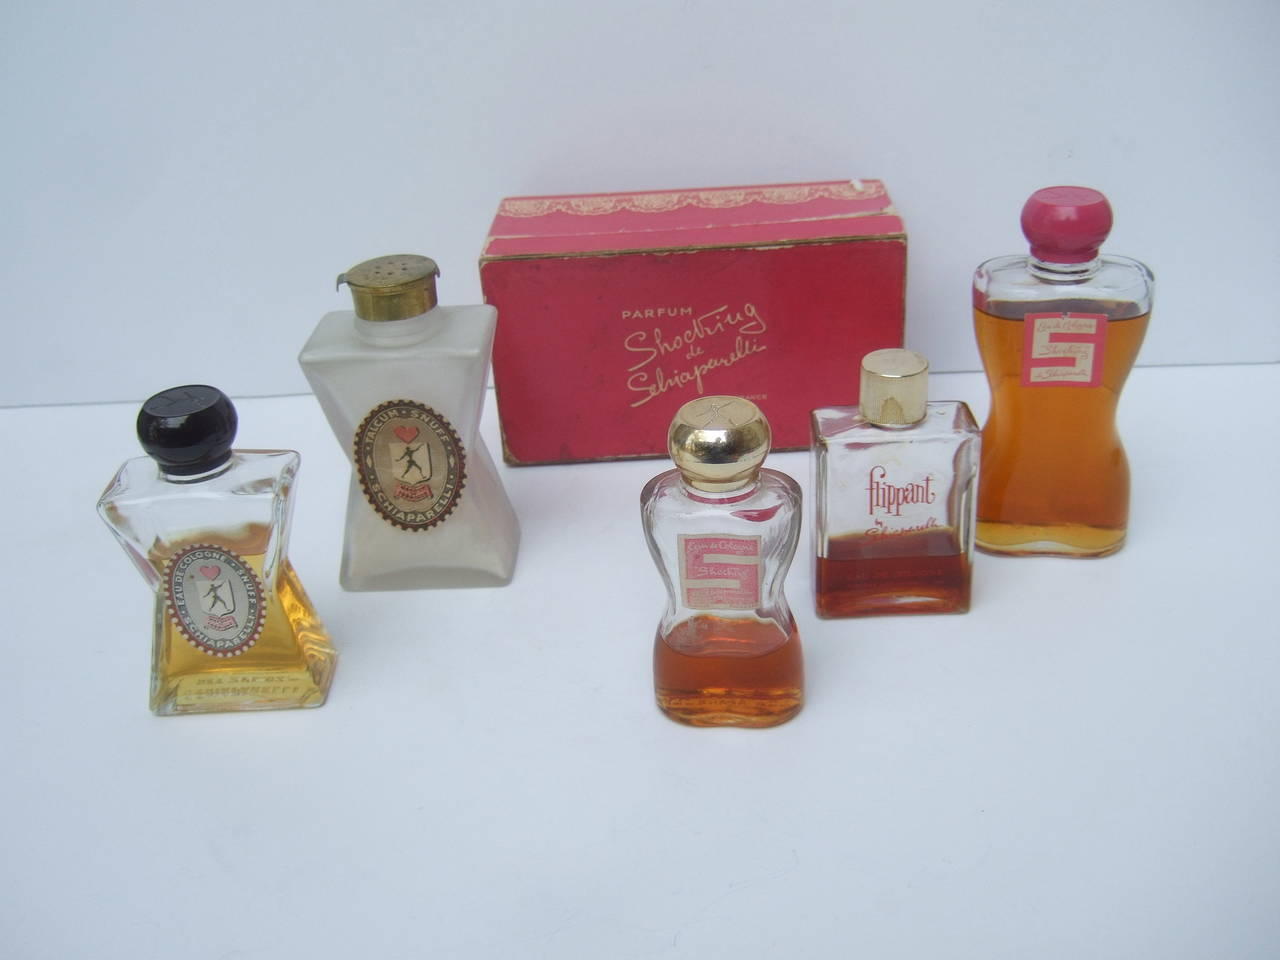 1950s perfume bottles